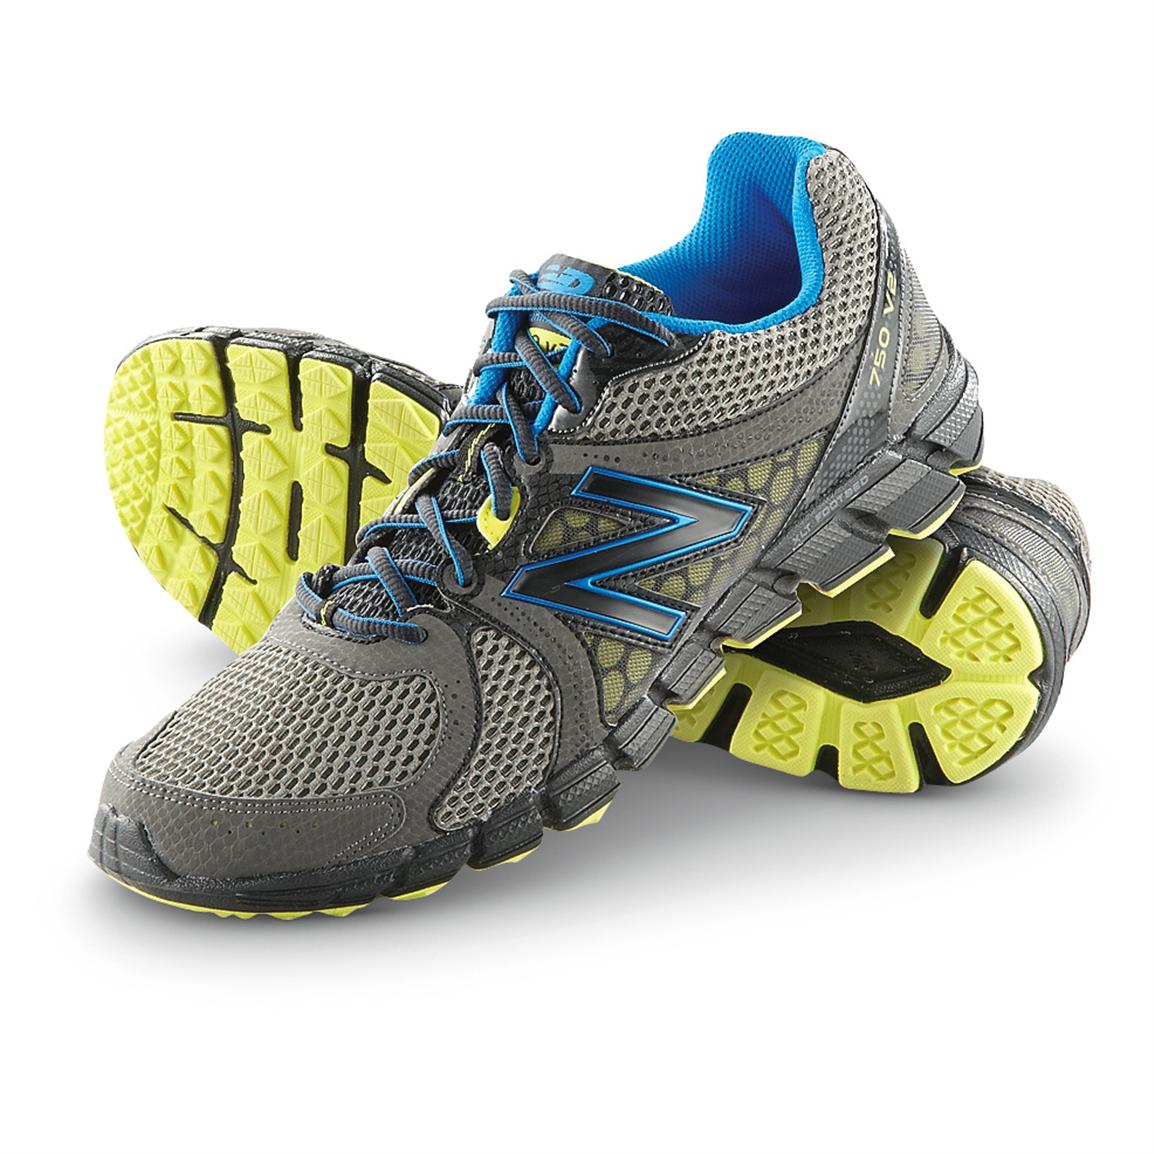 New Balance Men's 750V2 Trail Runner Shoes, Gray / Blue - 583717 ...